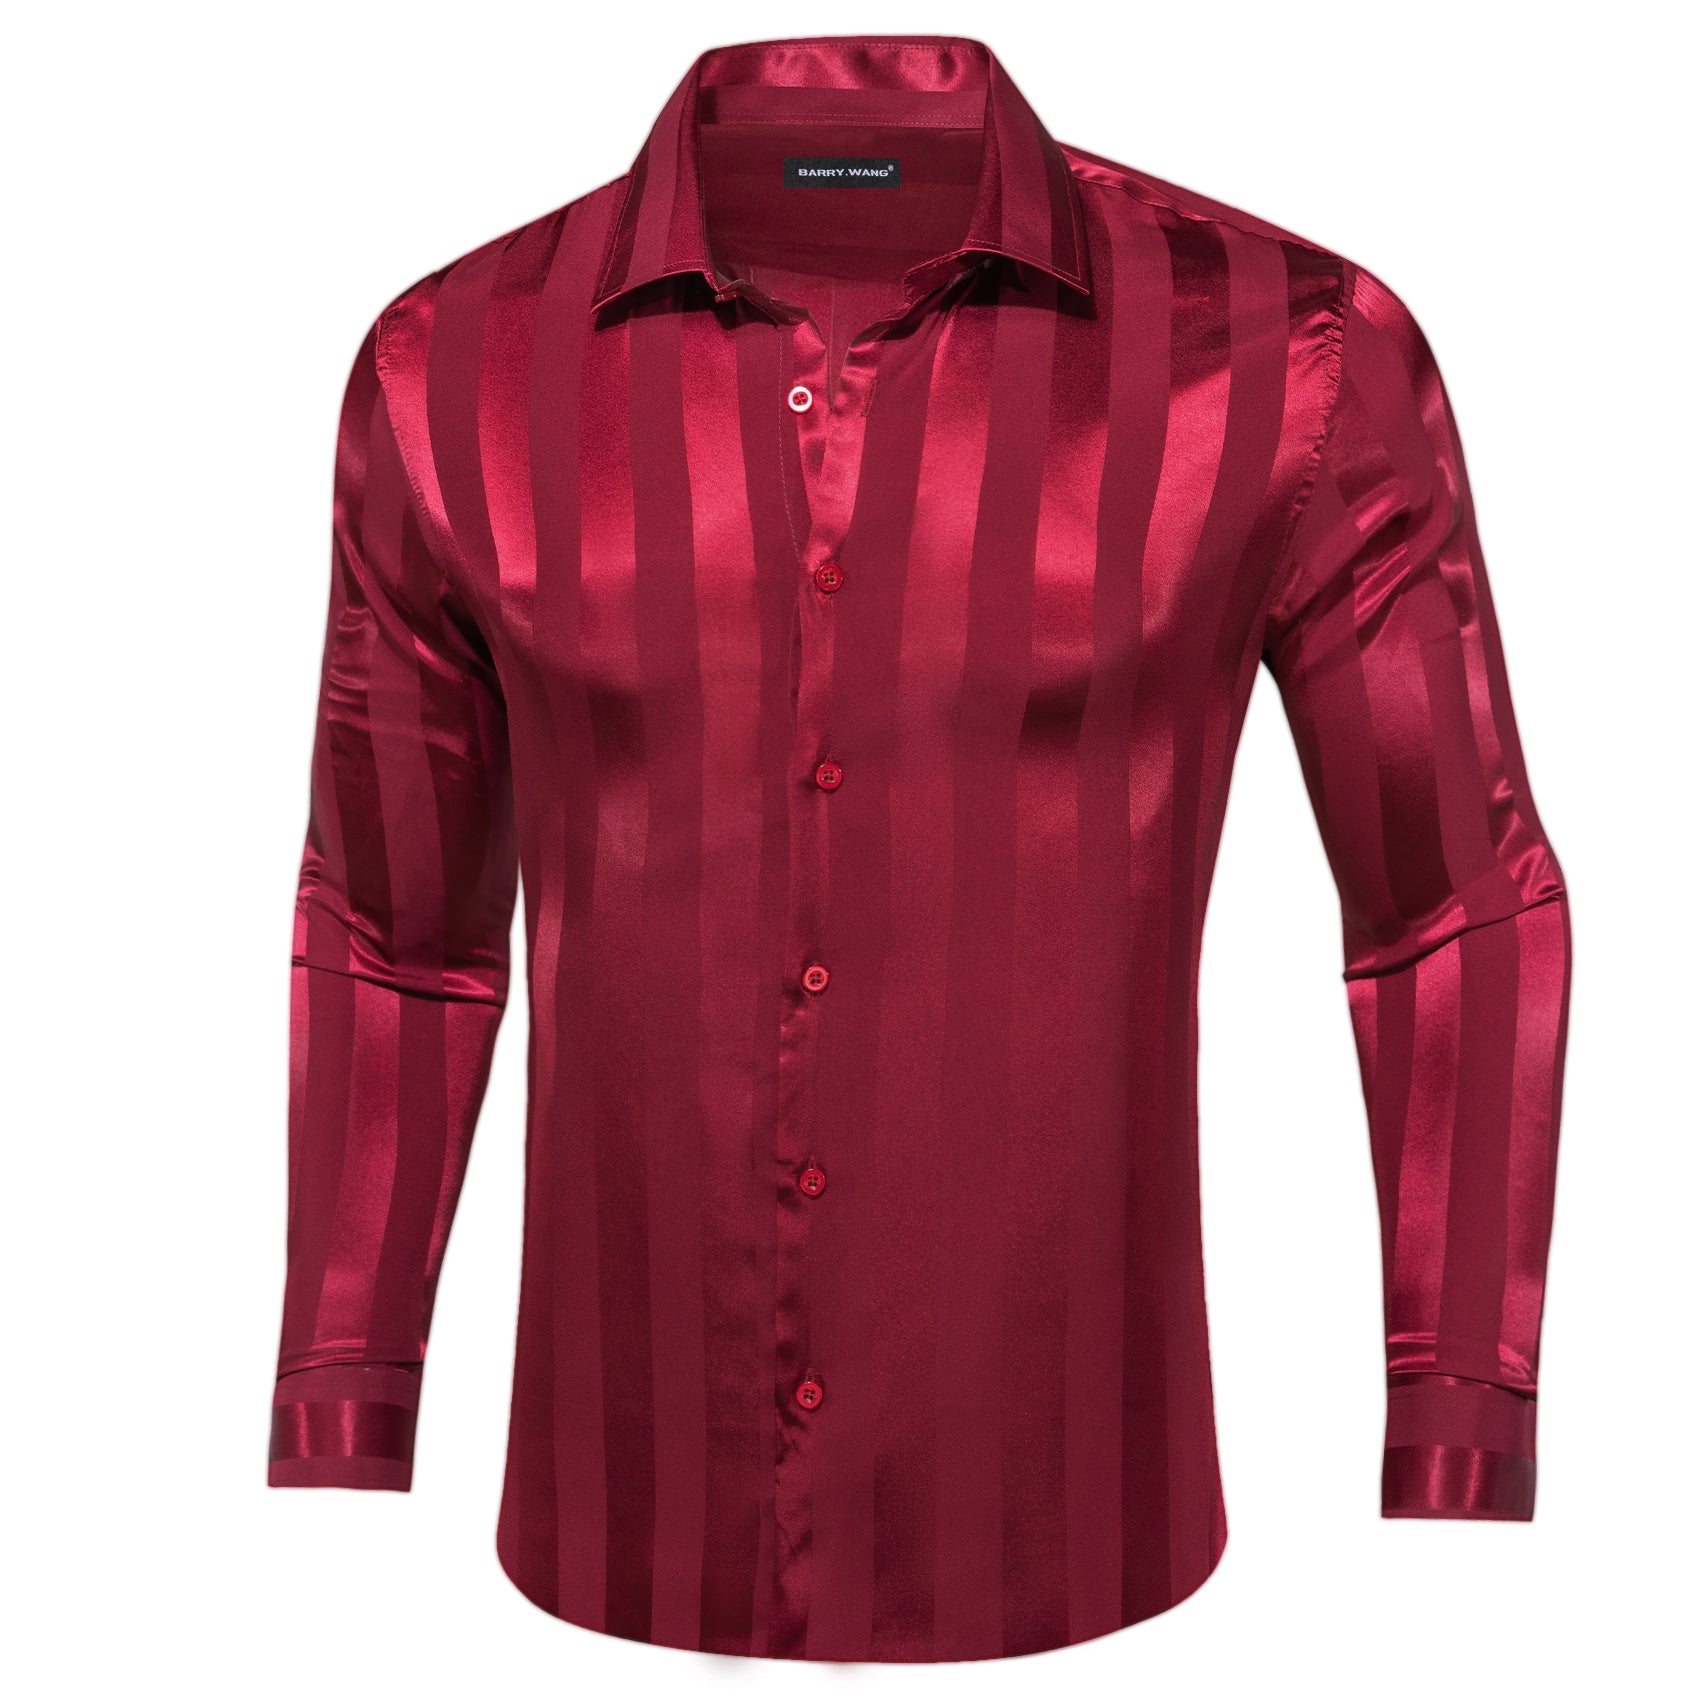 Barry.wang Dark Red Striped Silk Men's Shirt